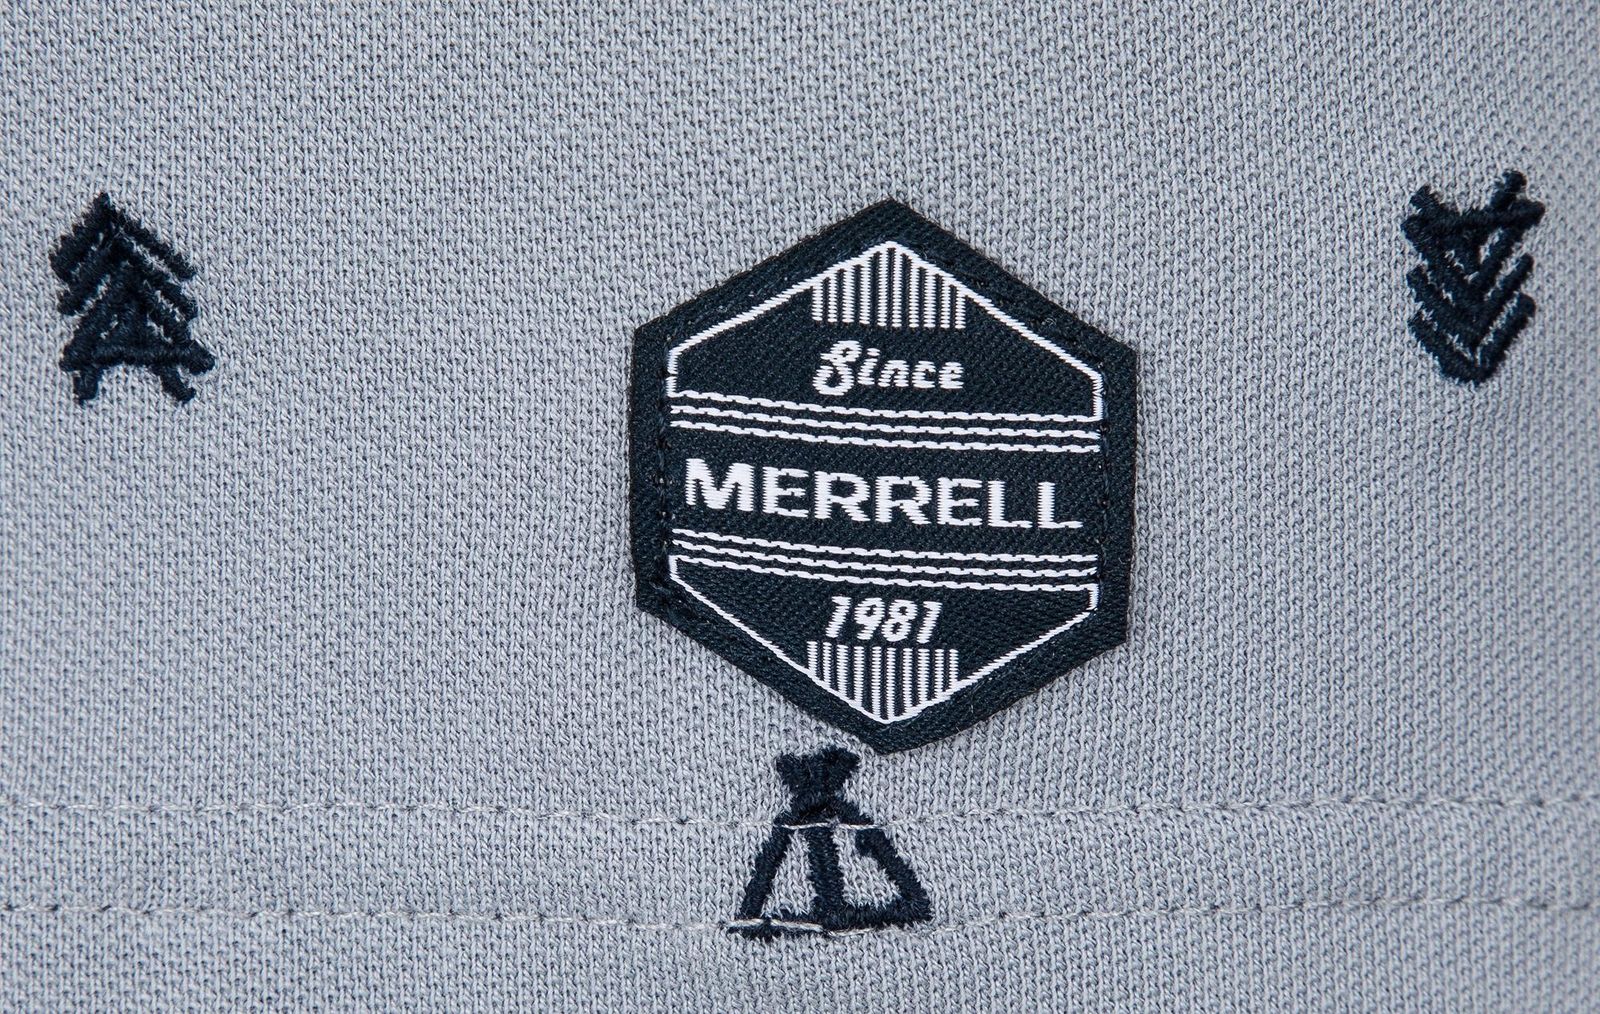   Merrell Men's Polo, : . S19AMRPOM01-Q1.  54